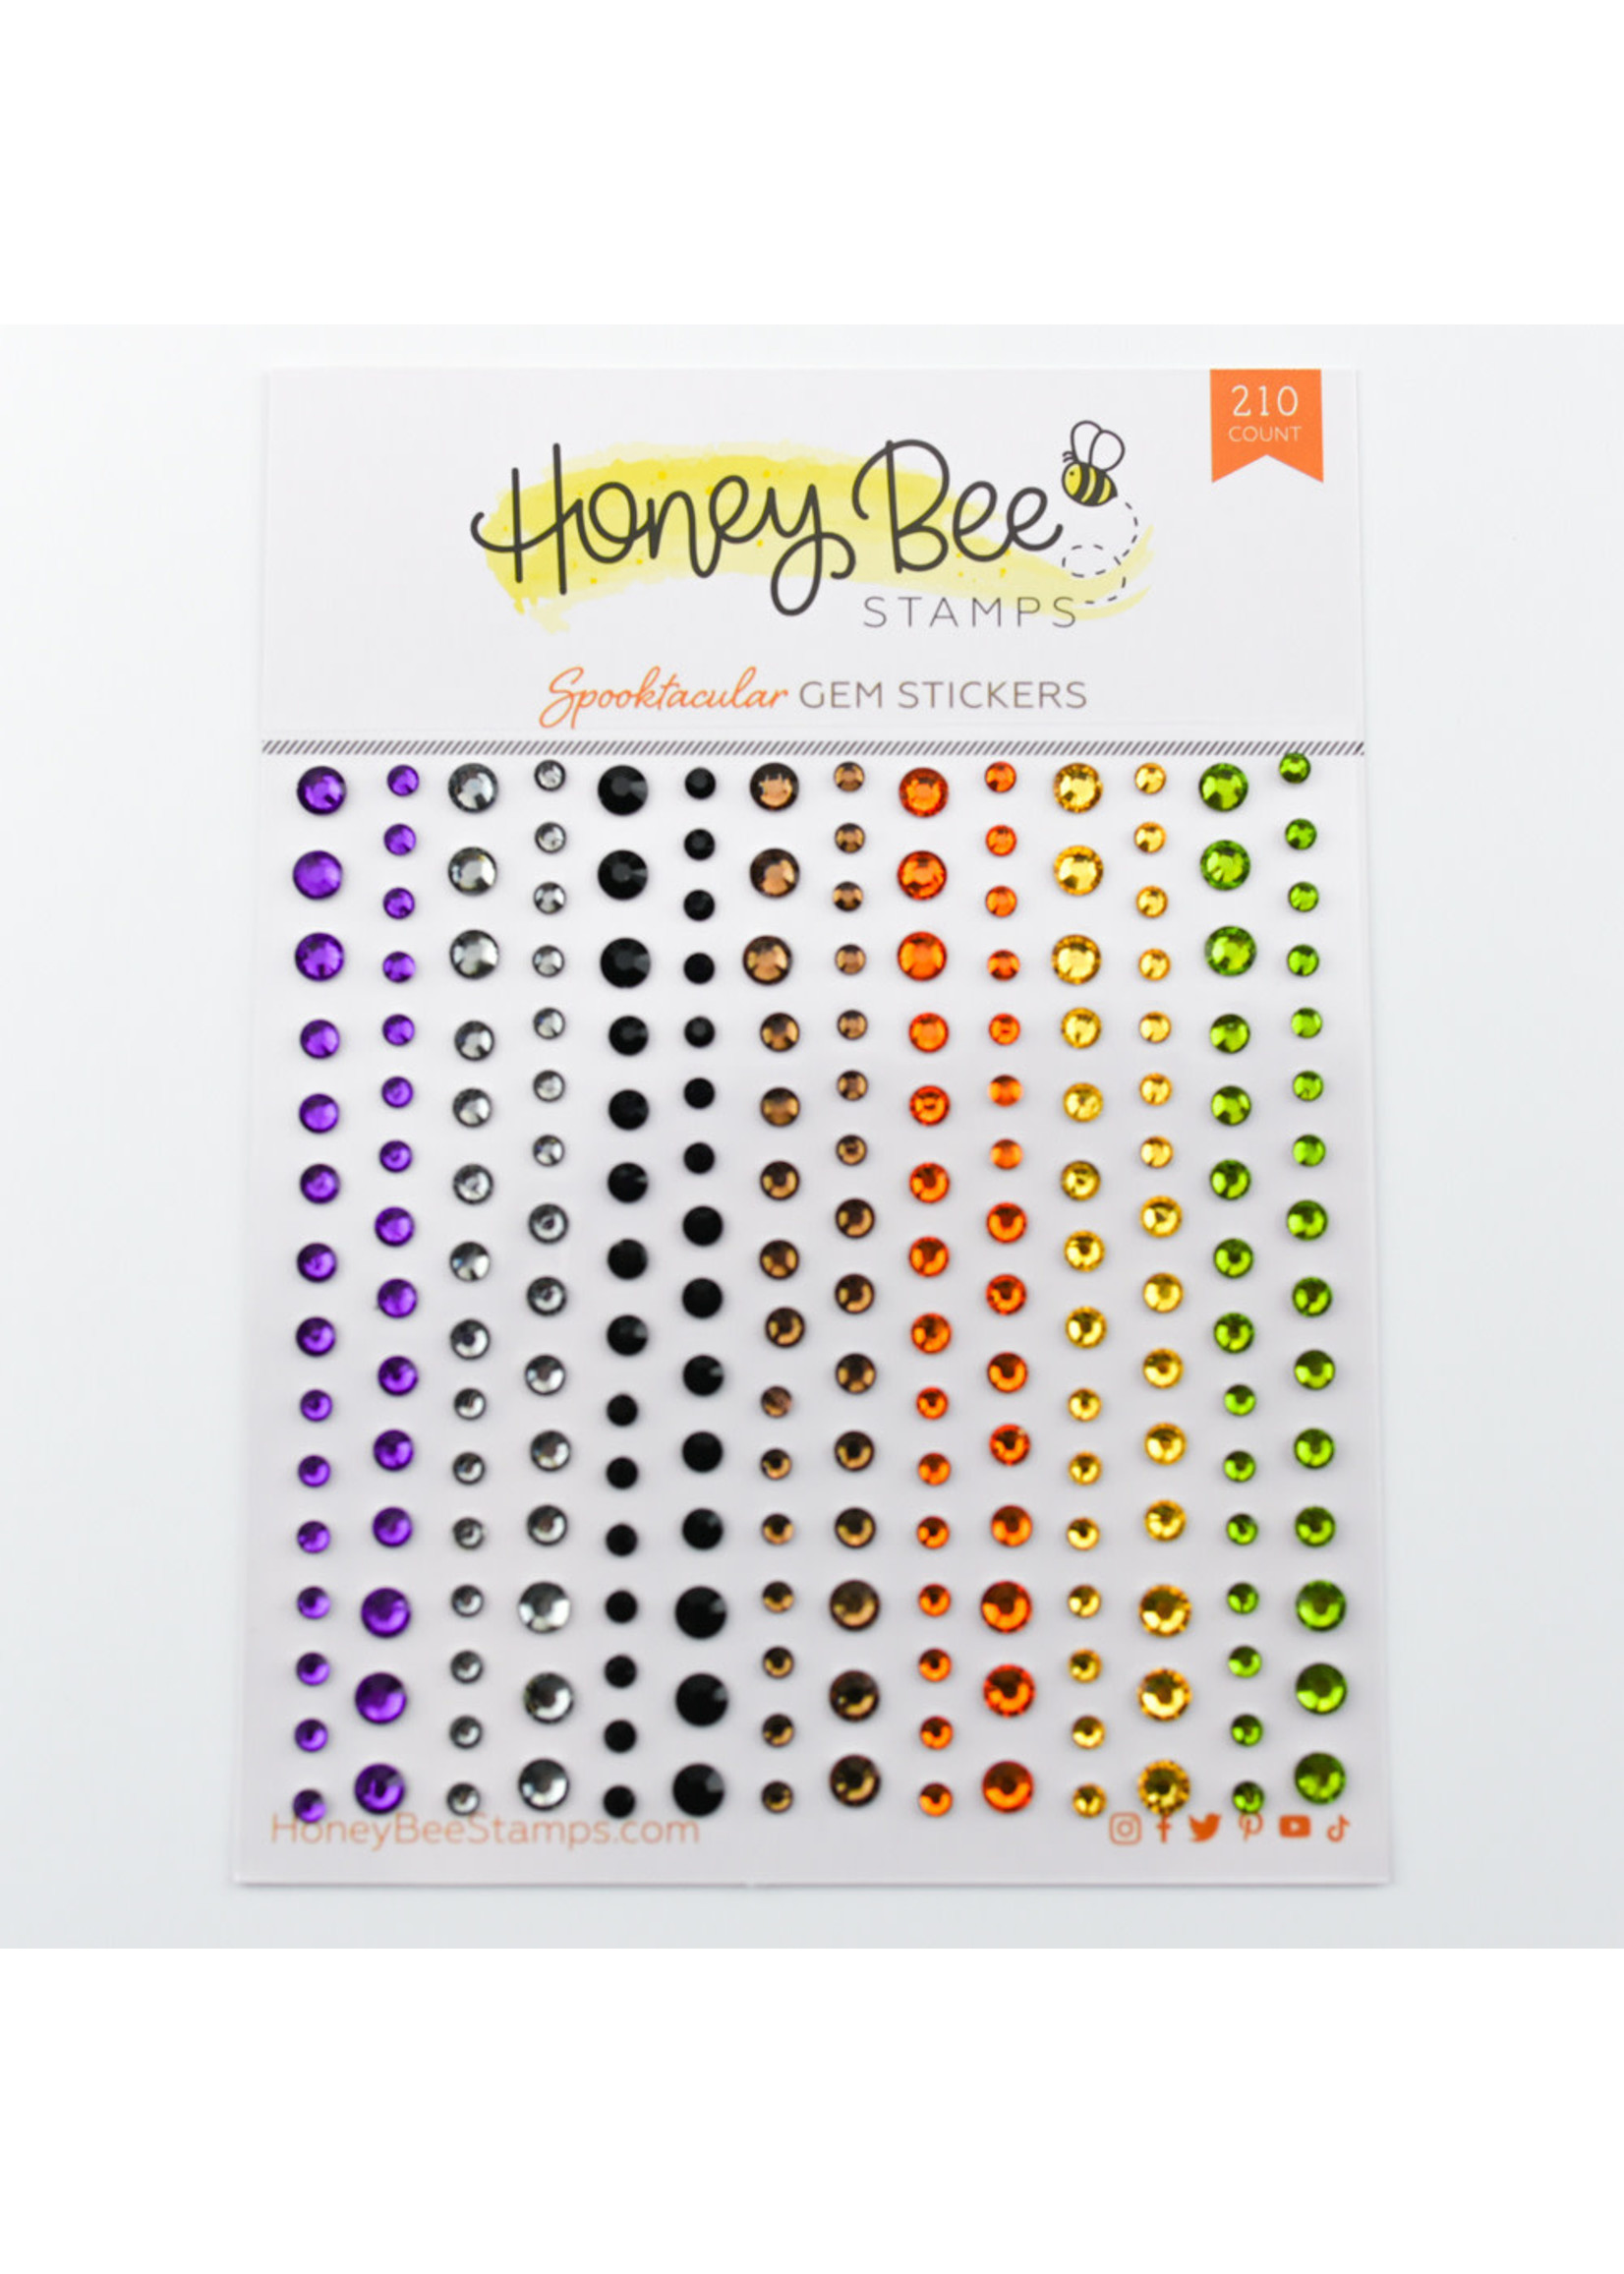 Honey Bee Stamps Gem Stickers, Spoooktacular